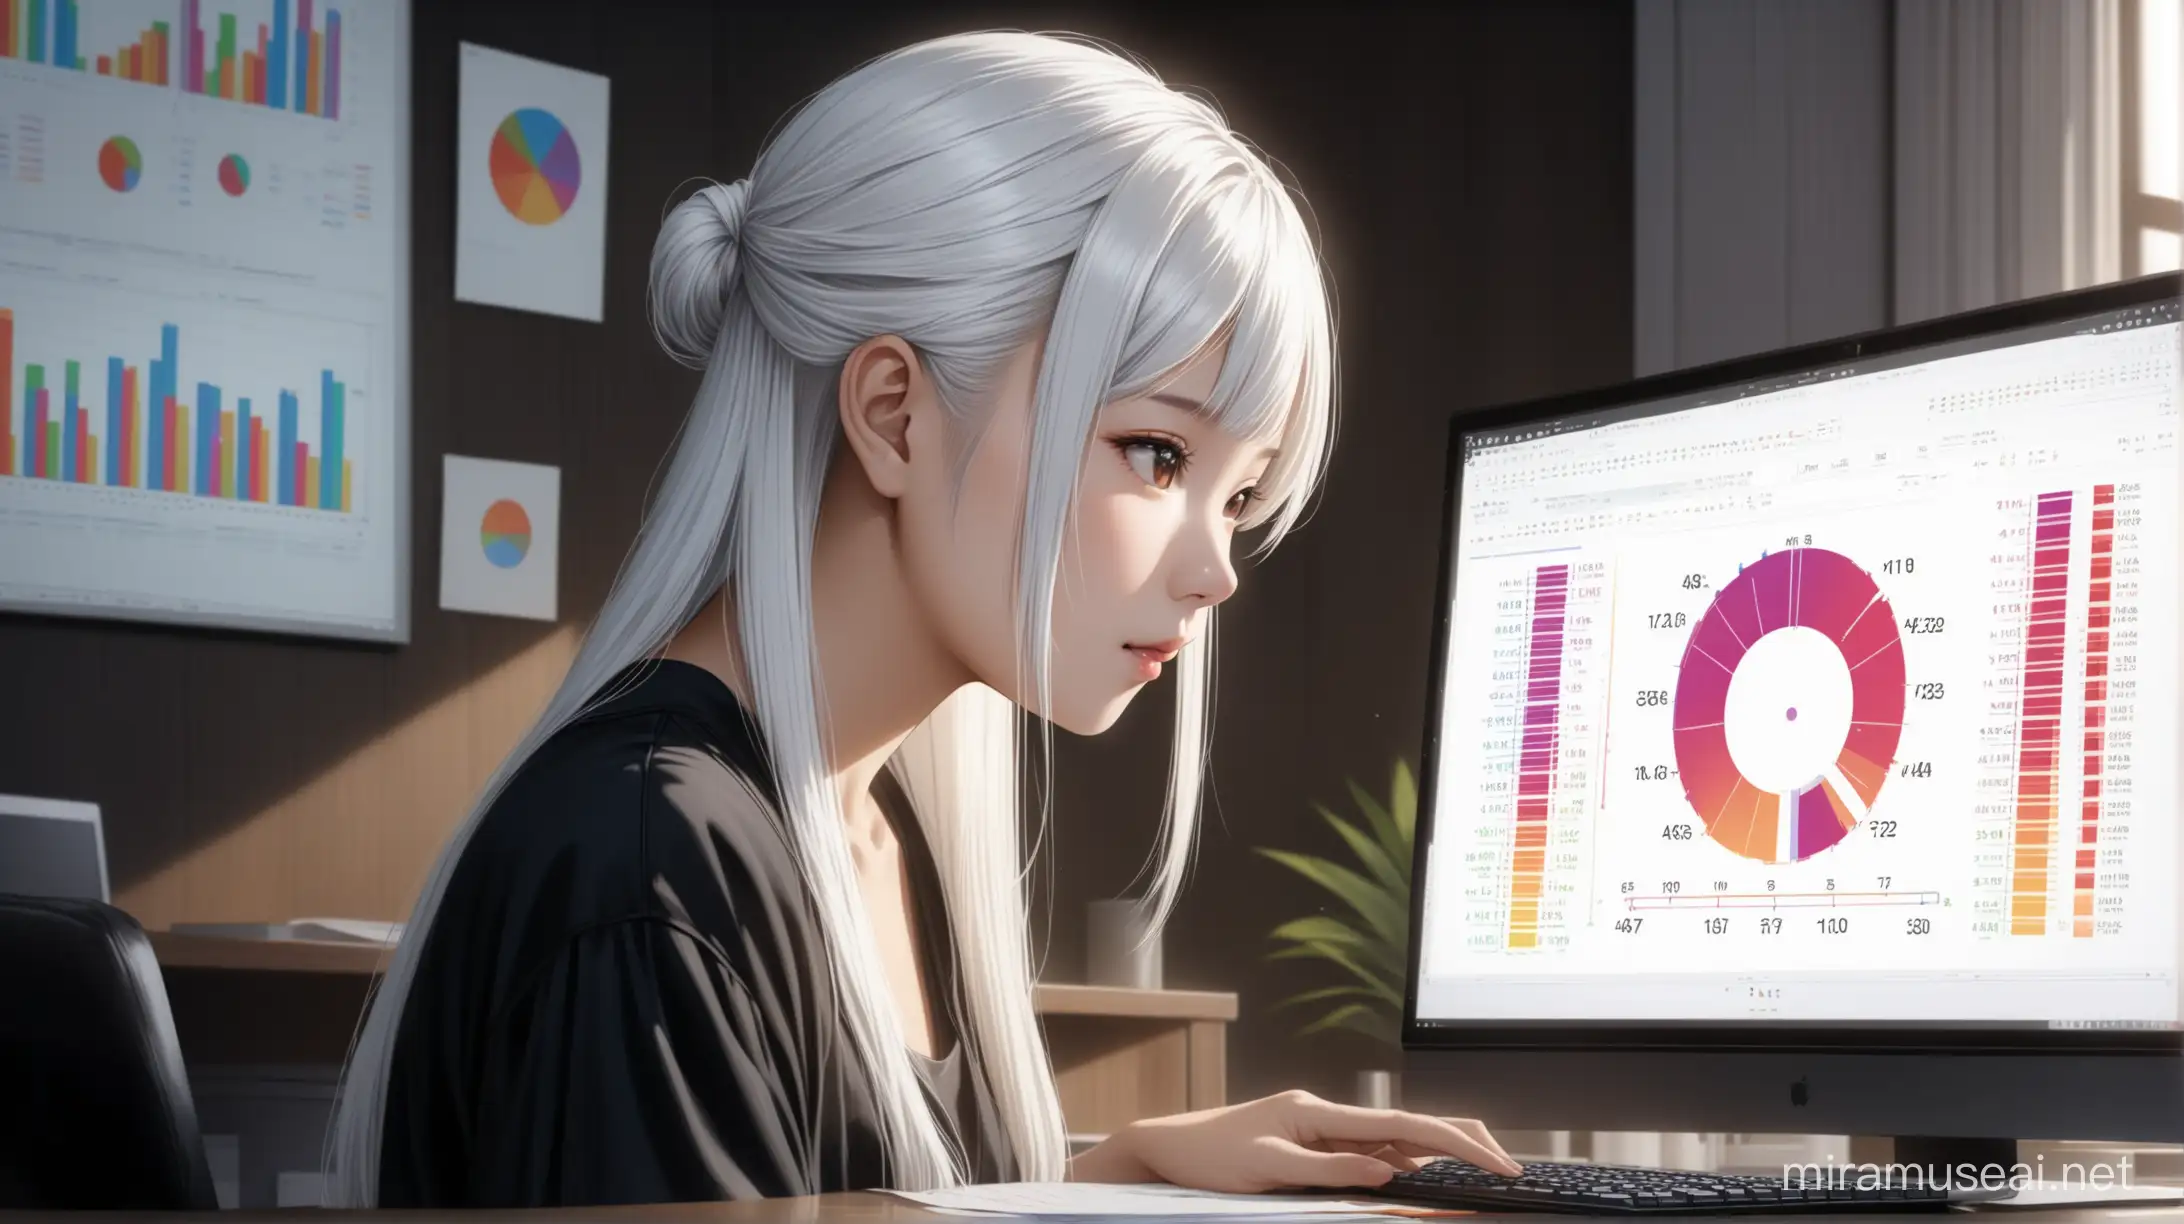 красивая девушка с белыми волосами, стиль прически карэ, азиатской внешности, анализирует информацию с гистогамами и кругами  через свой домашний компьютер.  реалистичность, 4к